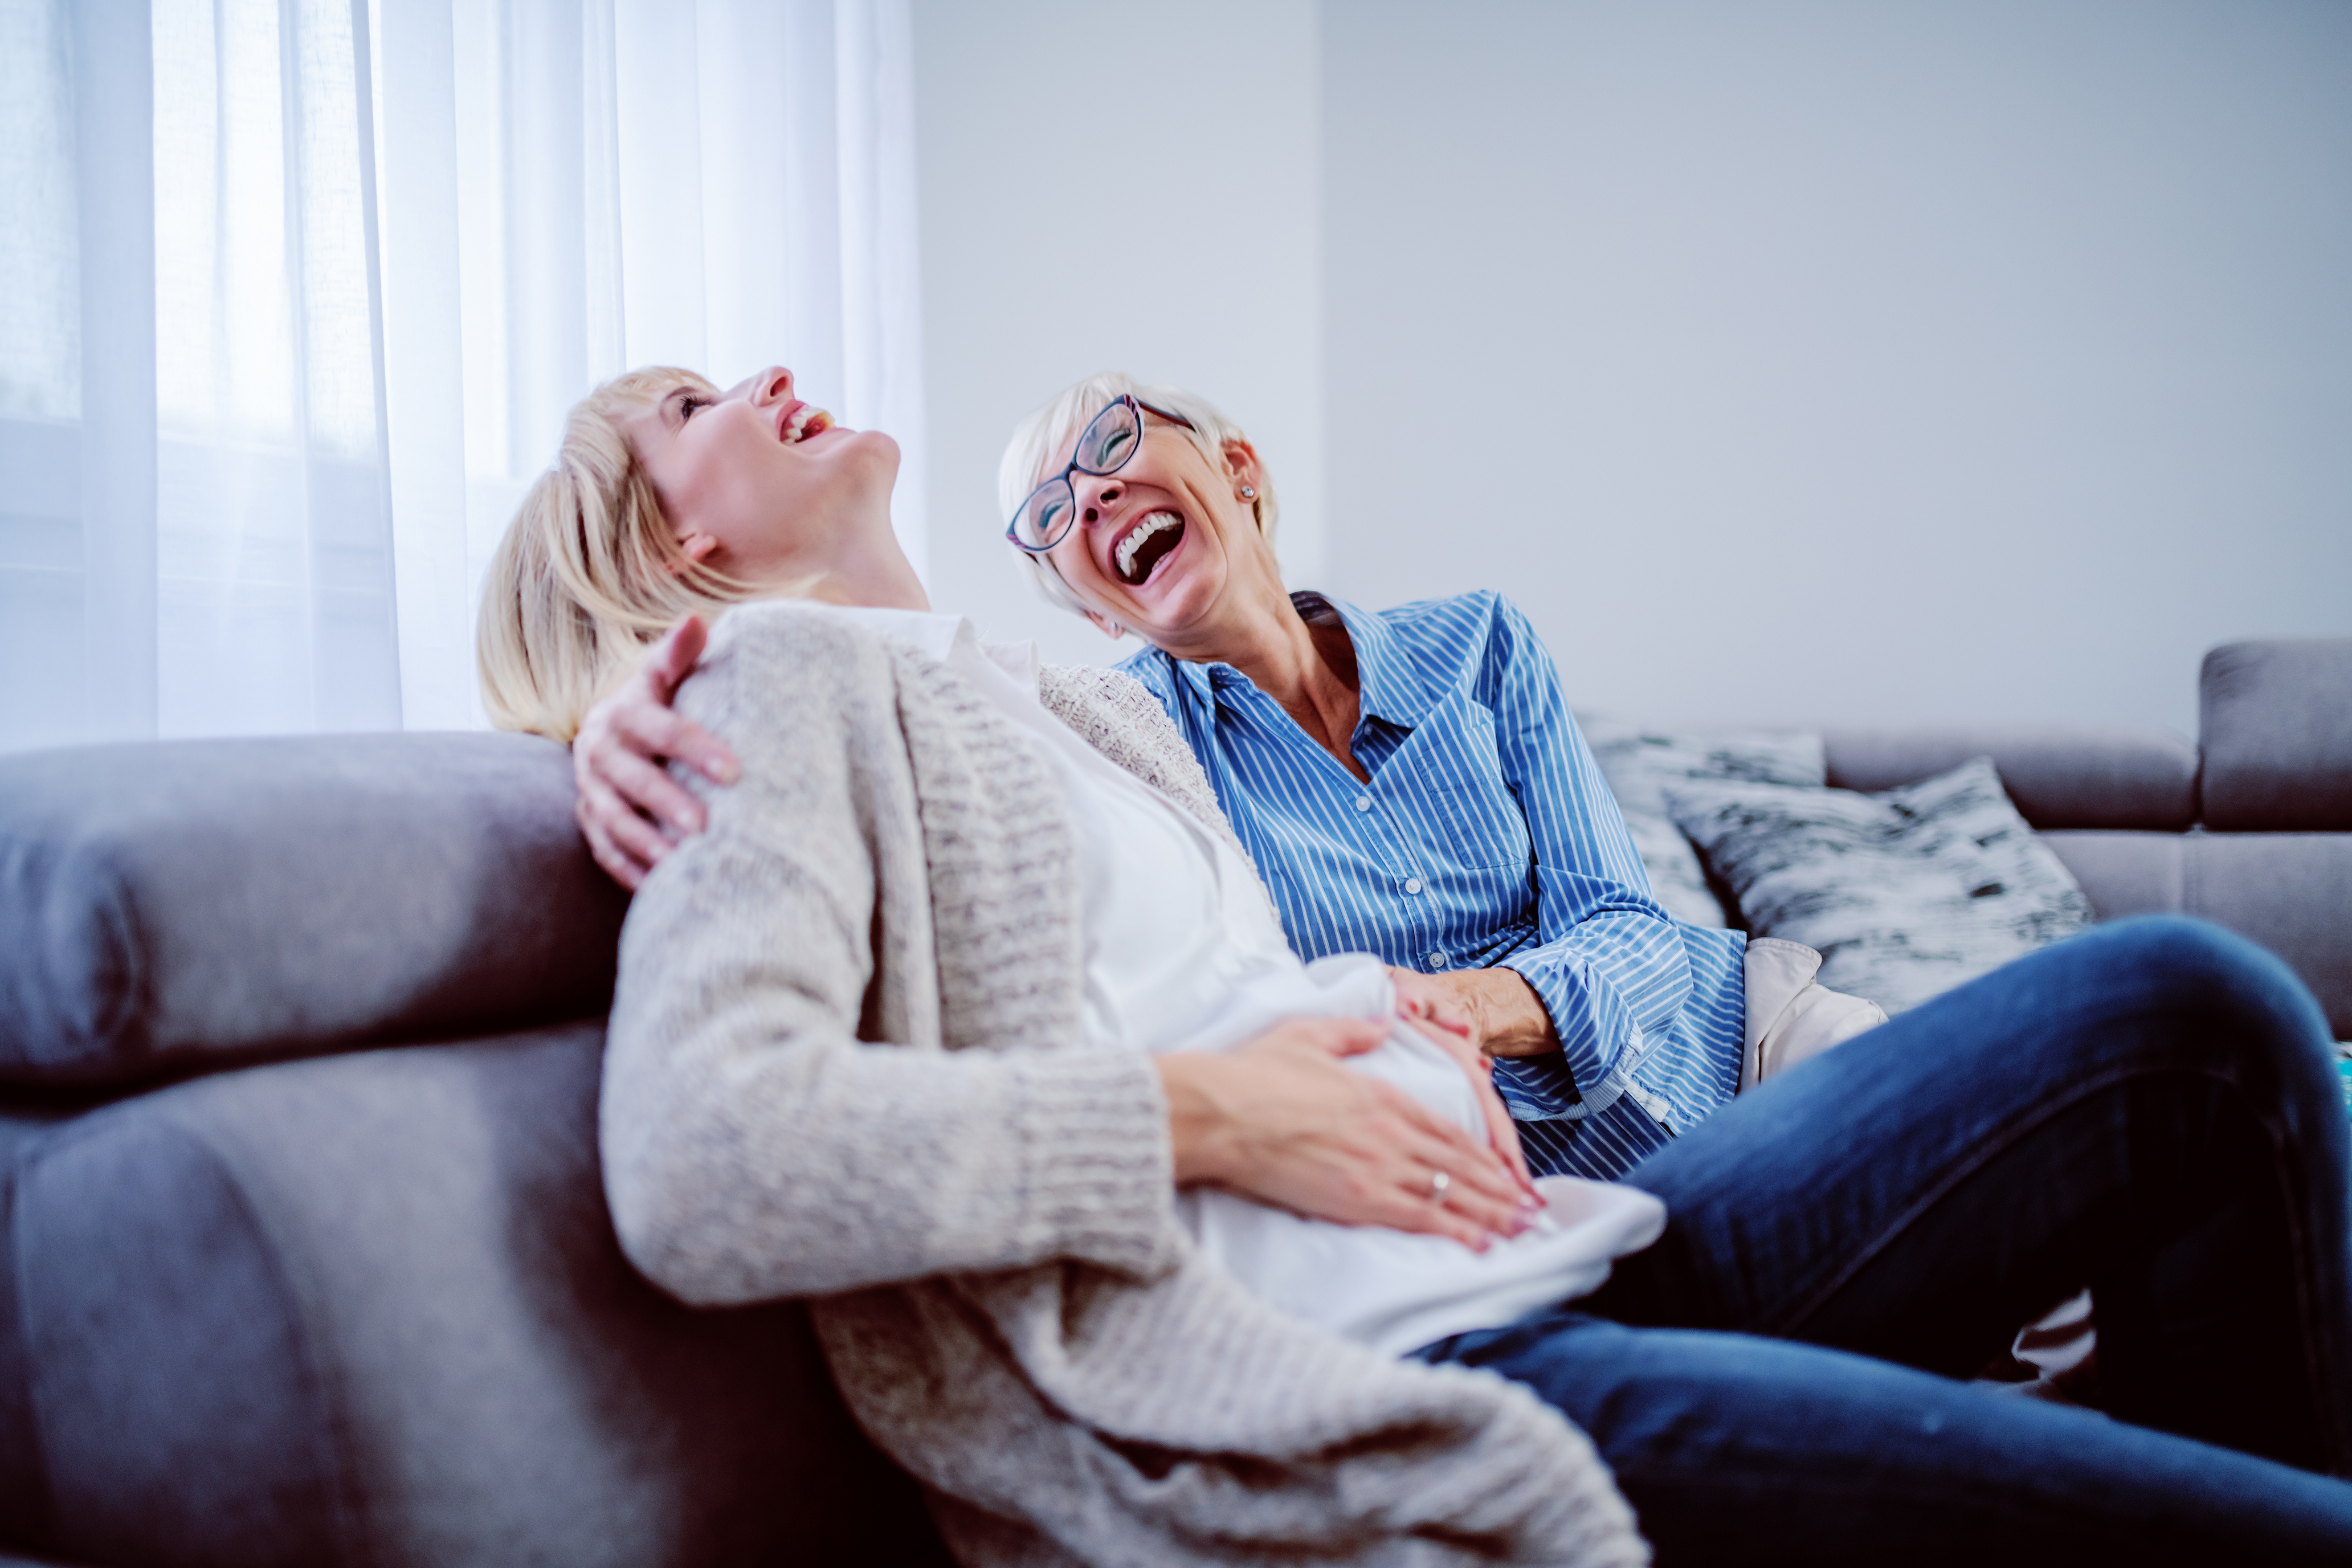 Eine jüngere Frau und eine ältere Frau freuen sich über eine Schwangerschaft | Quelle: Shutterstock